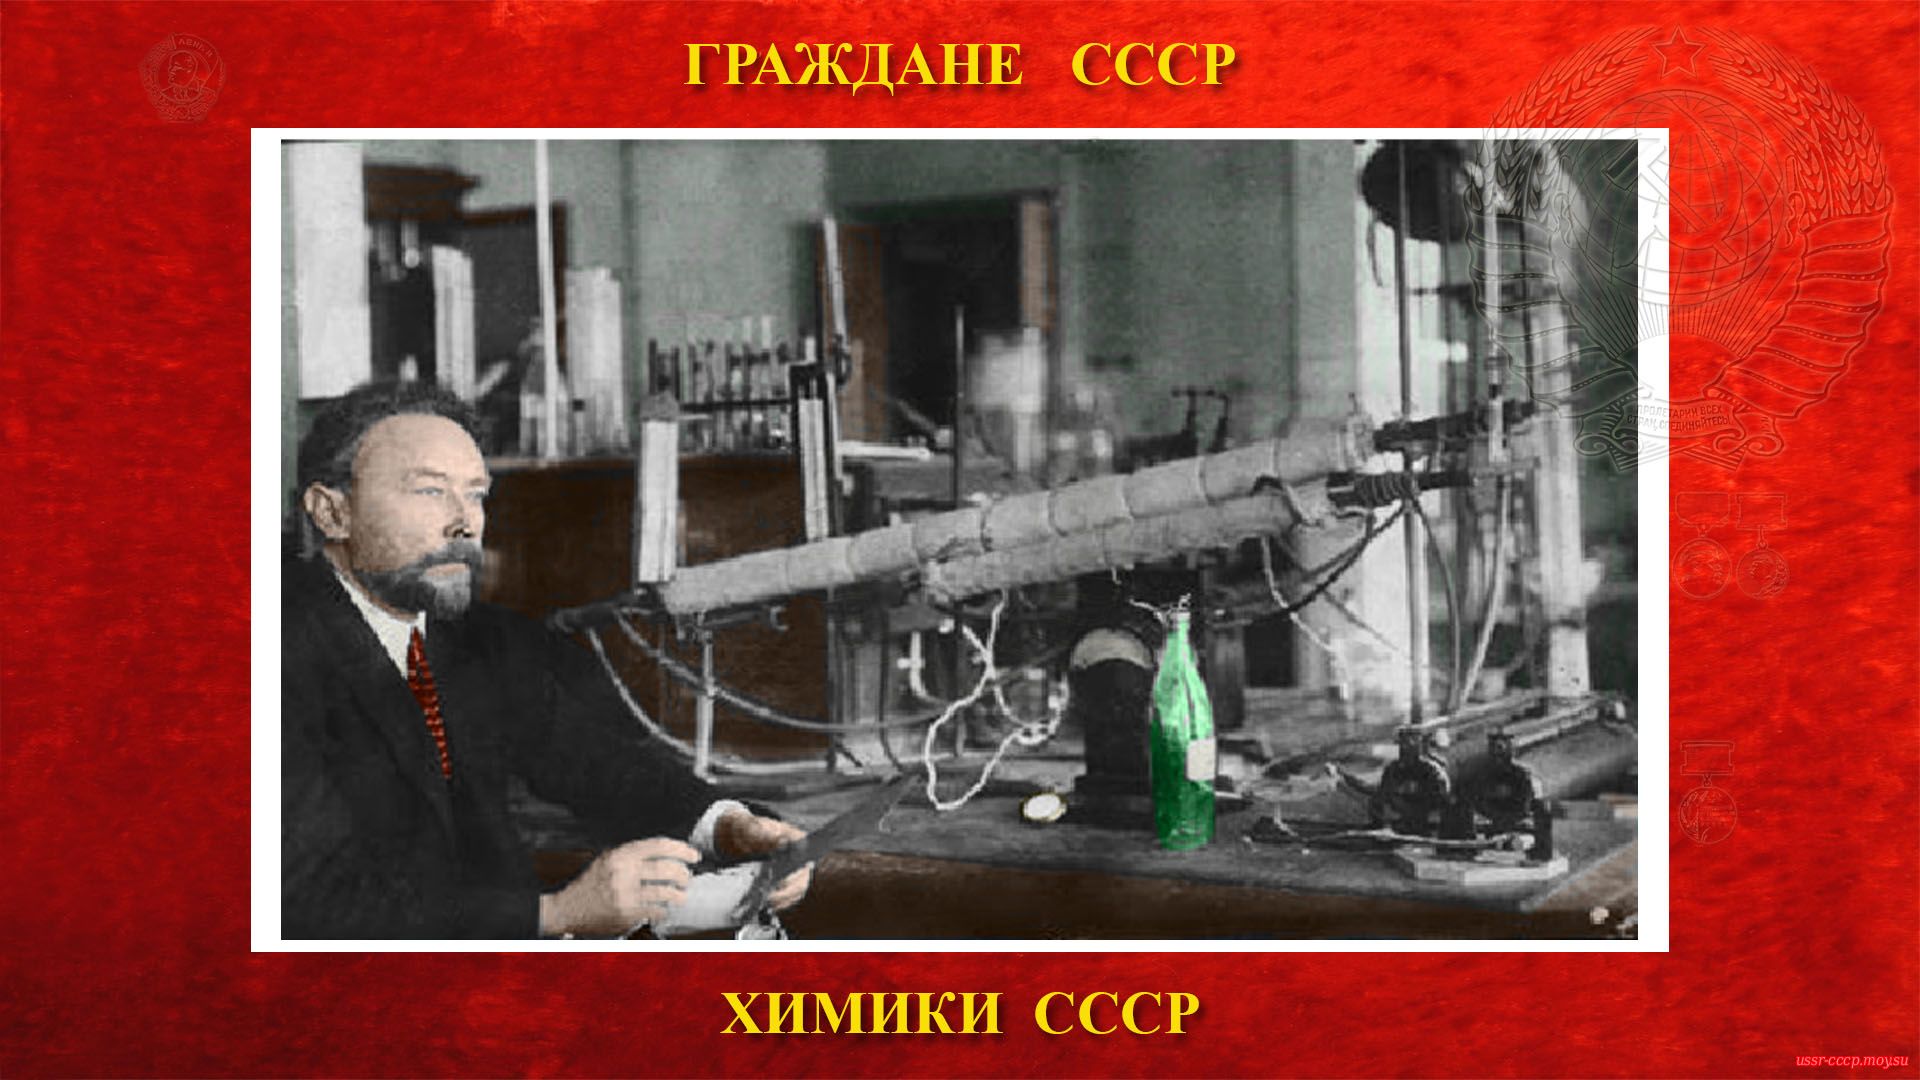 Лебедев Сергей Васильевич — Русский и Советский учёный-химик